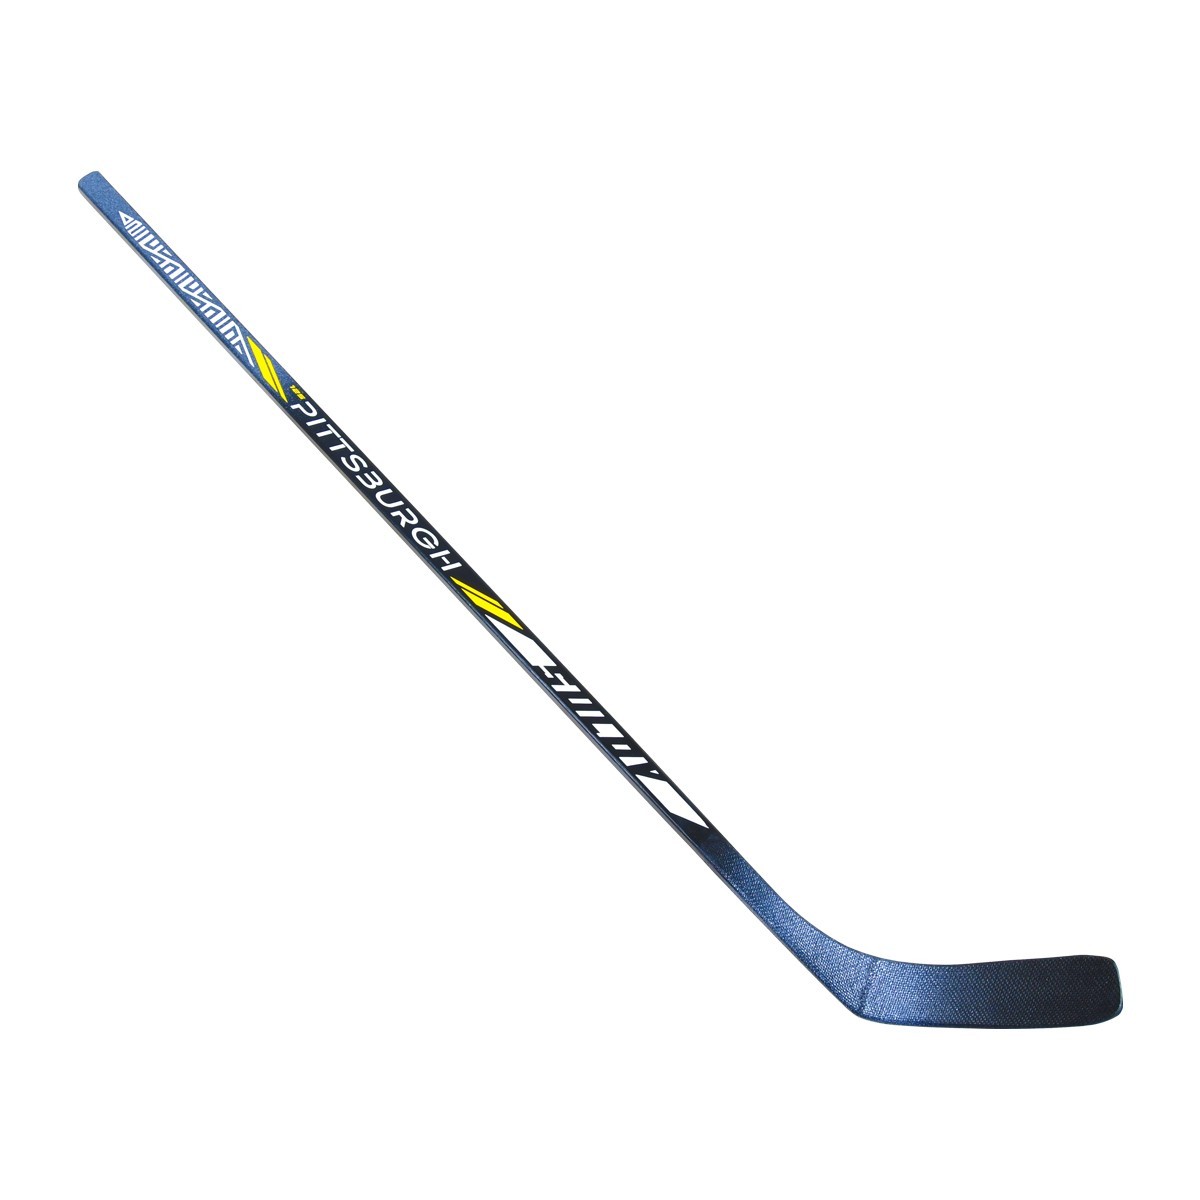 Hokejka SULOV PITSBURG, 125cm, pravá